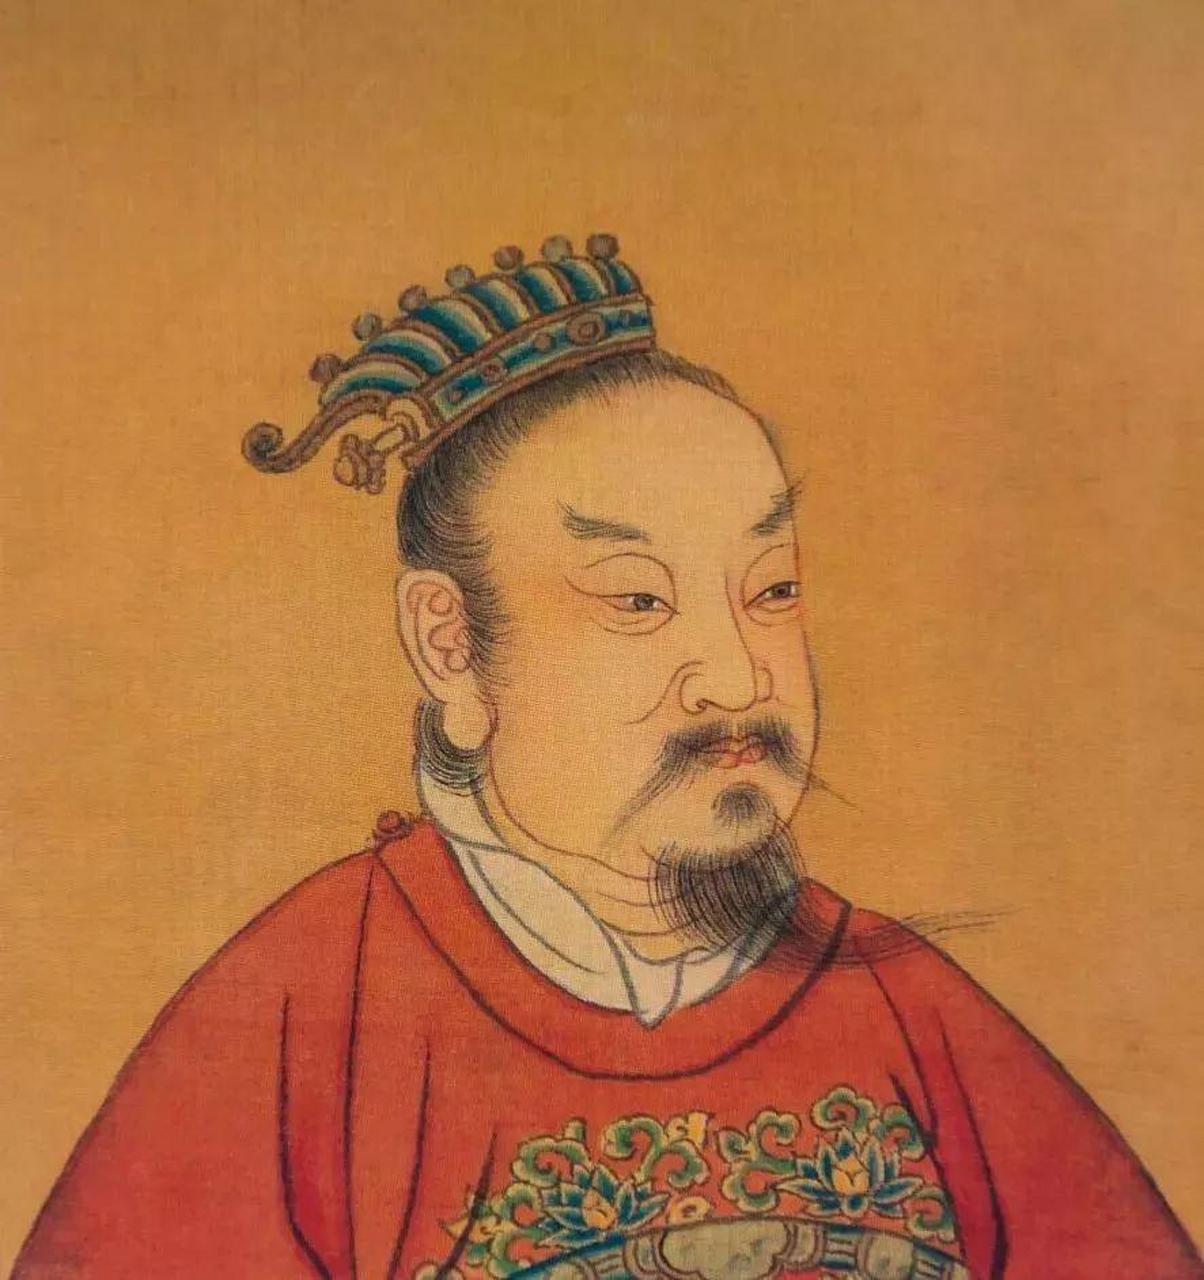 汉景帝的一夜风流,竟无形之中,为大汉王朝续命200年 汉景帝很宠爱一个